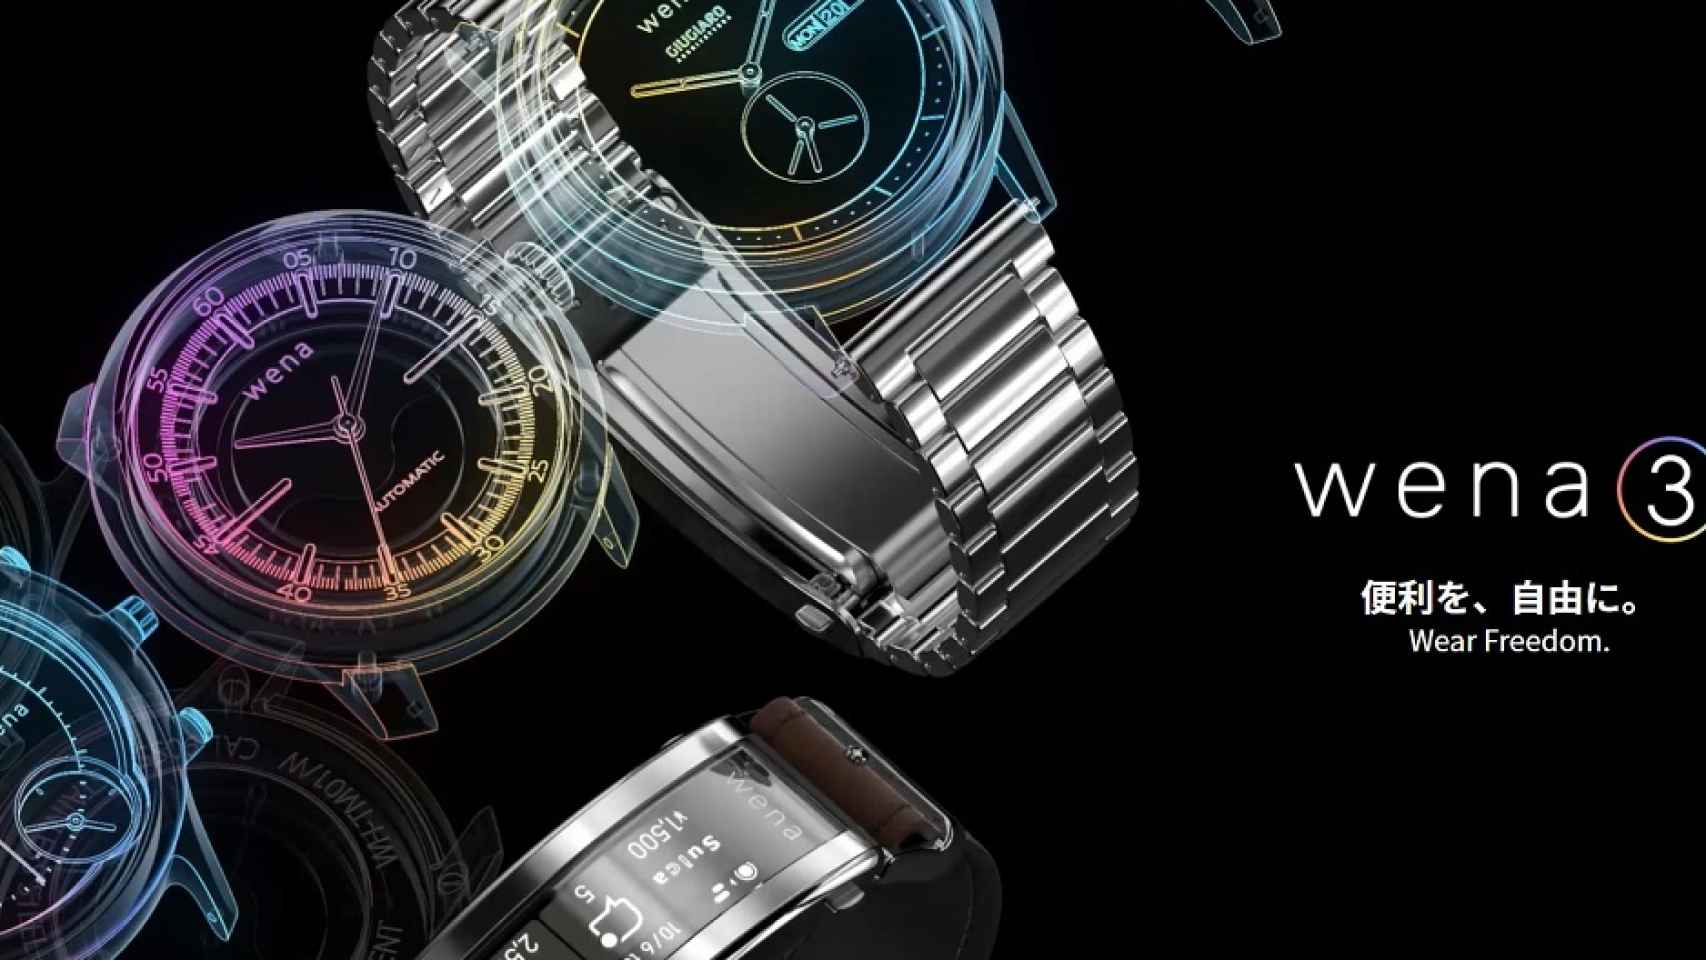 Sony convierte cualquier reloj en un smartwatch con Alexa y sensor de ritmo cardíaco